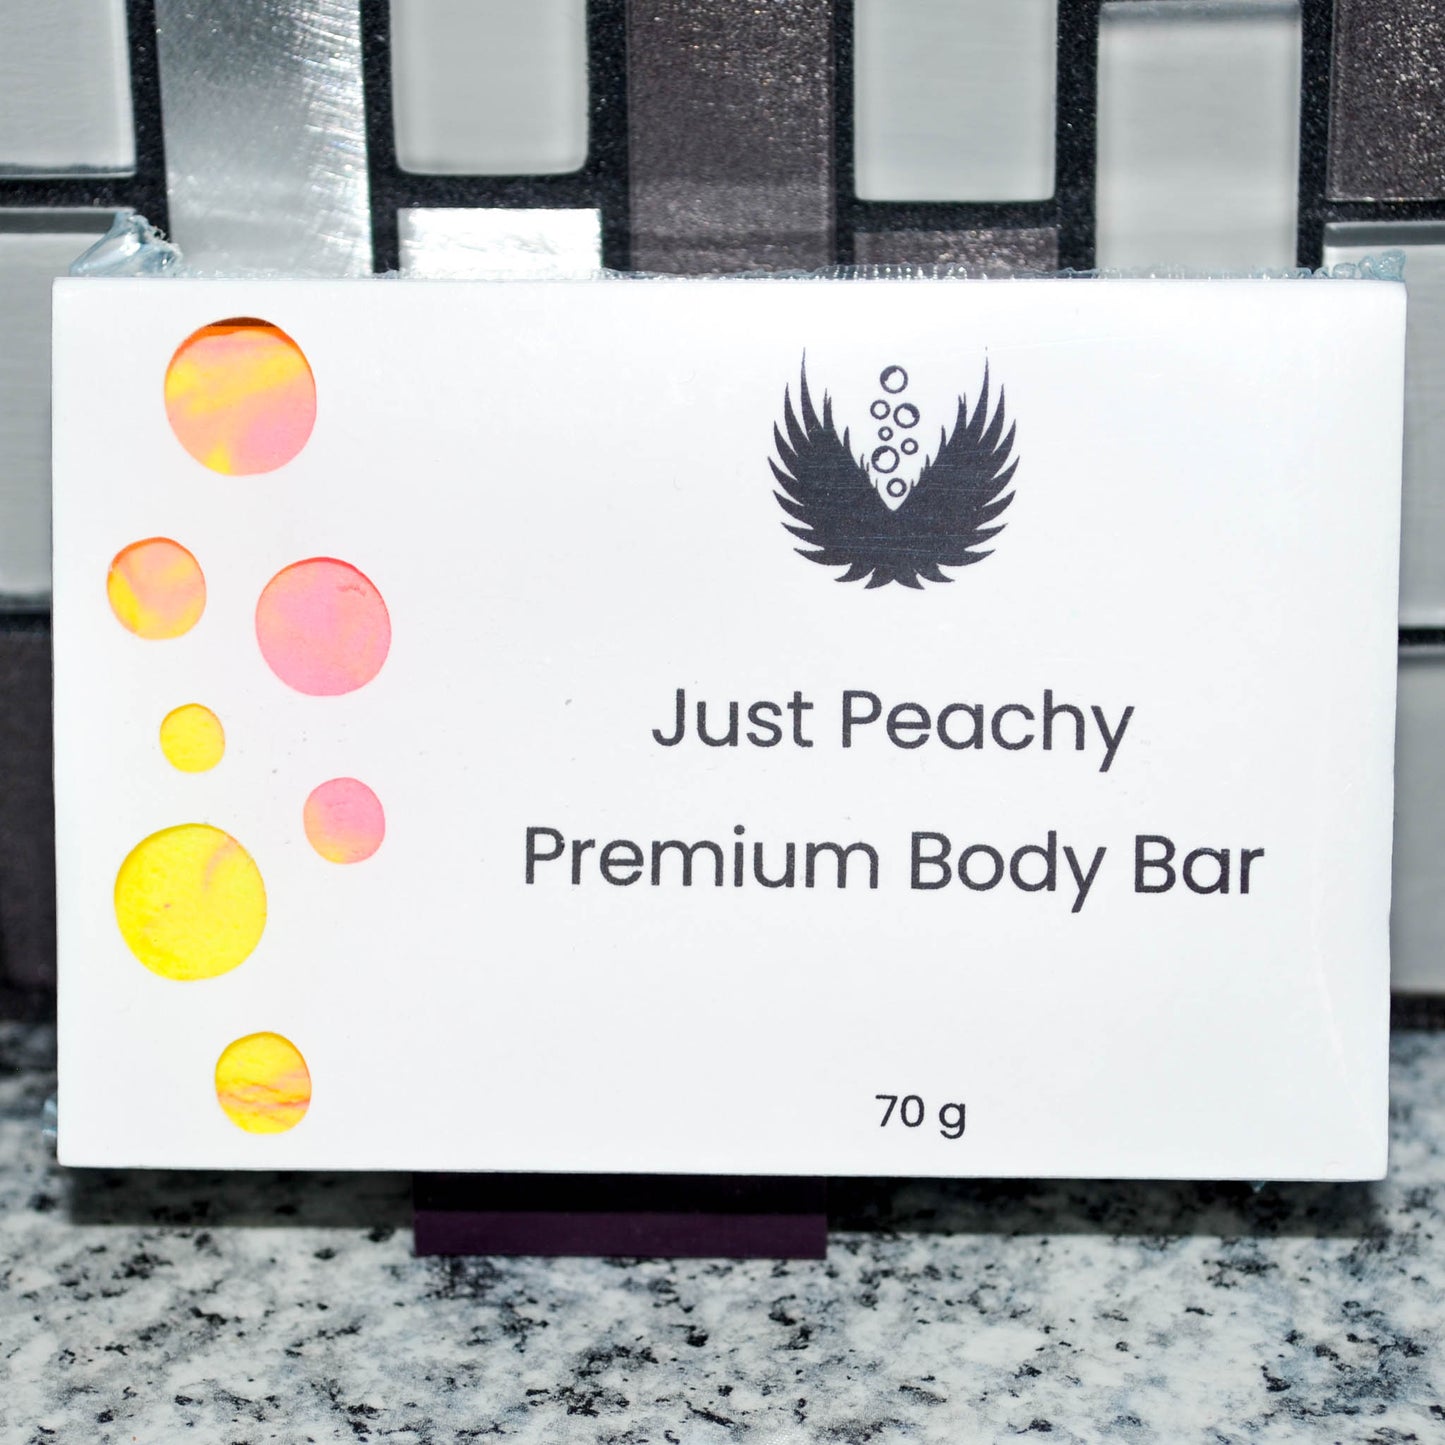 Just Peachy Premium Body Bar in Box